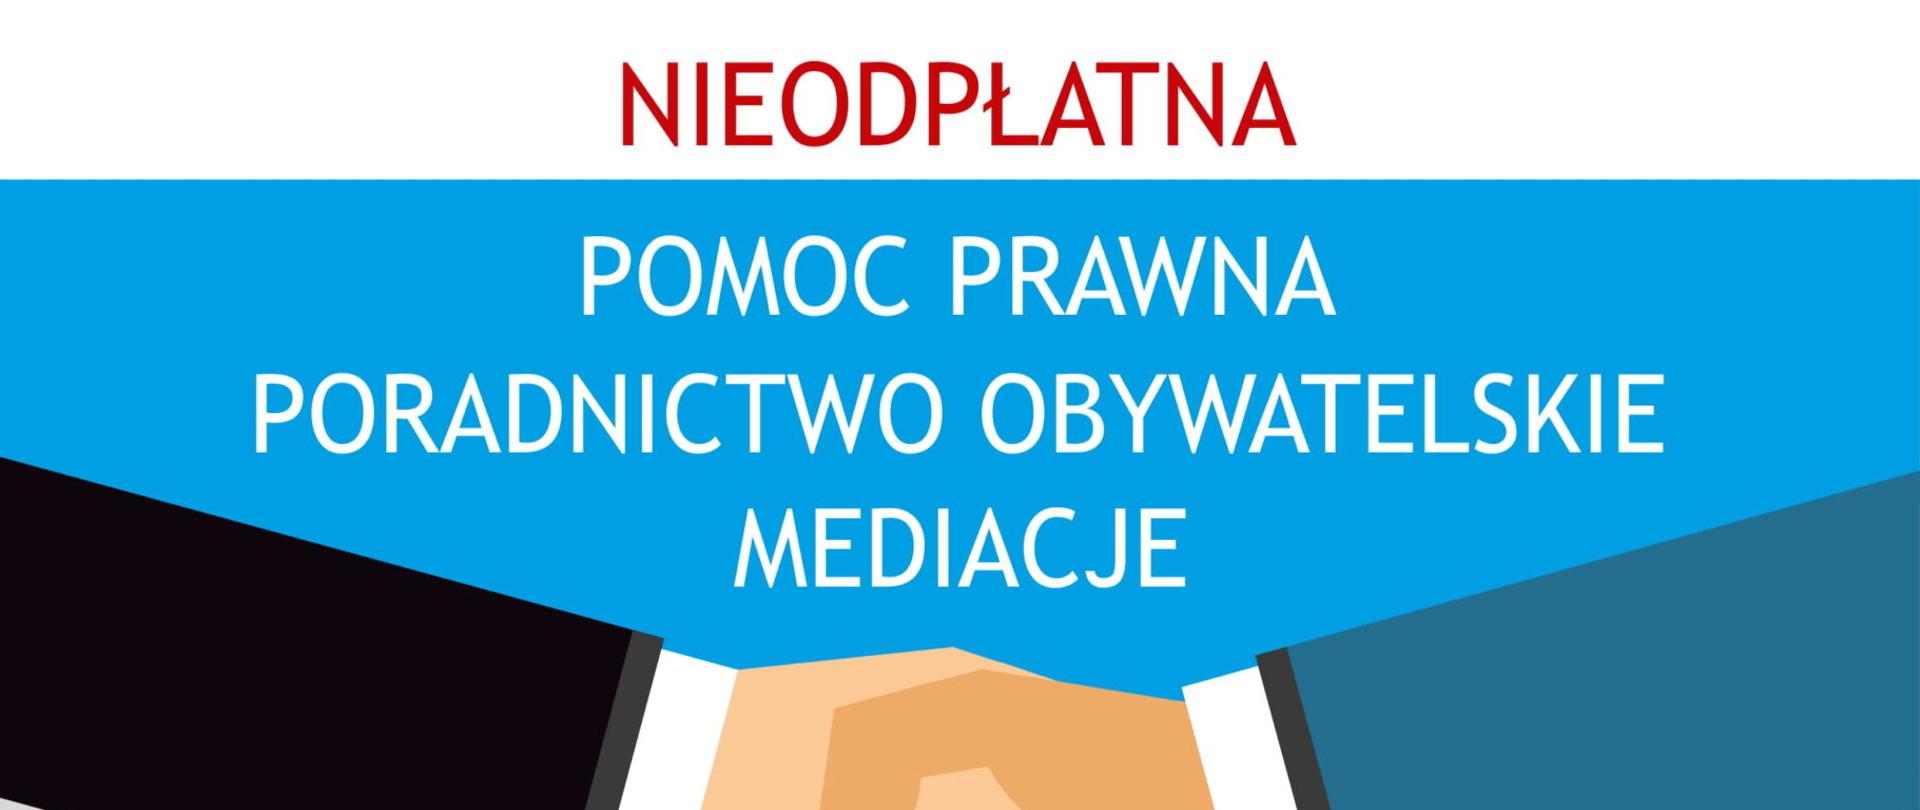 Grafika przedstawia narysowane dwie ręce z uściśniętymi dłoniami; ręka z prawej strony jest w czarnym rękawie z wystającym fragmentem białej koszuli; ręka z lewej strony jest w niebieskim rękawie z wystającym fragmentem białej koszuli; nad rękami jest tekst: nieopłatna pomoc prawna, poradnictwo obywatelskie, mediacje; pod rękami są dwa jasnoniebieskie prostokąty; lewy ma na górze niebieski pasek z kołem z lewej strony, w kole są trzy białe postacie, w pasku biały napis: dla kogo?; poniżej w prostokącie jest tekst: dla osób fizycznych po podpisaniu w punkcie oświadczenia, że nie jest w stanie ponieść kosztów odpłatnej pomocy prawnej, dla prowadzących jednoosobową działalność gospodarczą po złożeniu dodatkowego oświadczenia o niezatrudnianiu innych osób w ciągu ostatniego roku, w czasie epidemii samorząd lokalny może podjąć decyzję, o udzielaniu świadczeń zdalnie; prostokąt z prawej strony ma na górze niebieski pasek z kołem, w kole jest biała lupa, a w pasku biały tekst: gdzie?; poniżej w prostokącie jest tekst: pomoc prawna i mediacje, Mordy, miejsko-gminna biblioteka publiczna, ul. Kilińskiego 9, Wodynie Gminny ośrodek kultury, ul. Siedlecka 41, Siedlce, Starostwo Powiatowe, ul. Piłsudskiego 40, poradnictwo obywatelskie i mediacje, Siedlce, Starostwo Powiatowe, ul. Piłsudskiego 40; między prostokątami jest czerwone kółko z białą słuchawką telefoniczną i czarnymi strzałkami po bokach, nad kółkiem jest napis: zapisy, pod kółkiem tekst: 25 644 72 17, pn, wt, czw: 8.00 - 16.00, śr: 8.00 - 18.00, pt: 8.00 - 14.00, poniżej czerwone kółko z białą strzałką i pod nim : np.ms.gov.pl i kod QR; na dole grafiki widnieje czarny tekst: godziny pracy punktów:, pod nim niebieski poziomy pasek z białym napisem: bip.powiatsiedlecki.pl, poniżej logo: stowarzyszenia sursum corda, ministerstwa sprawiedliwości oraz herb powiatu siedleckiego, pod spodem tekst: Projekt finansowany z budżetu Państwa, realizowany przez Powiat siedlecki